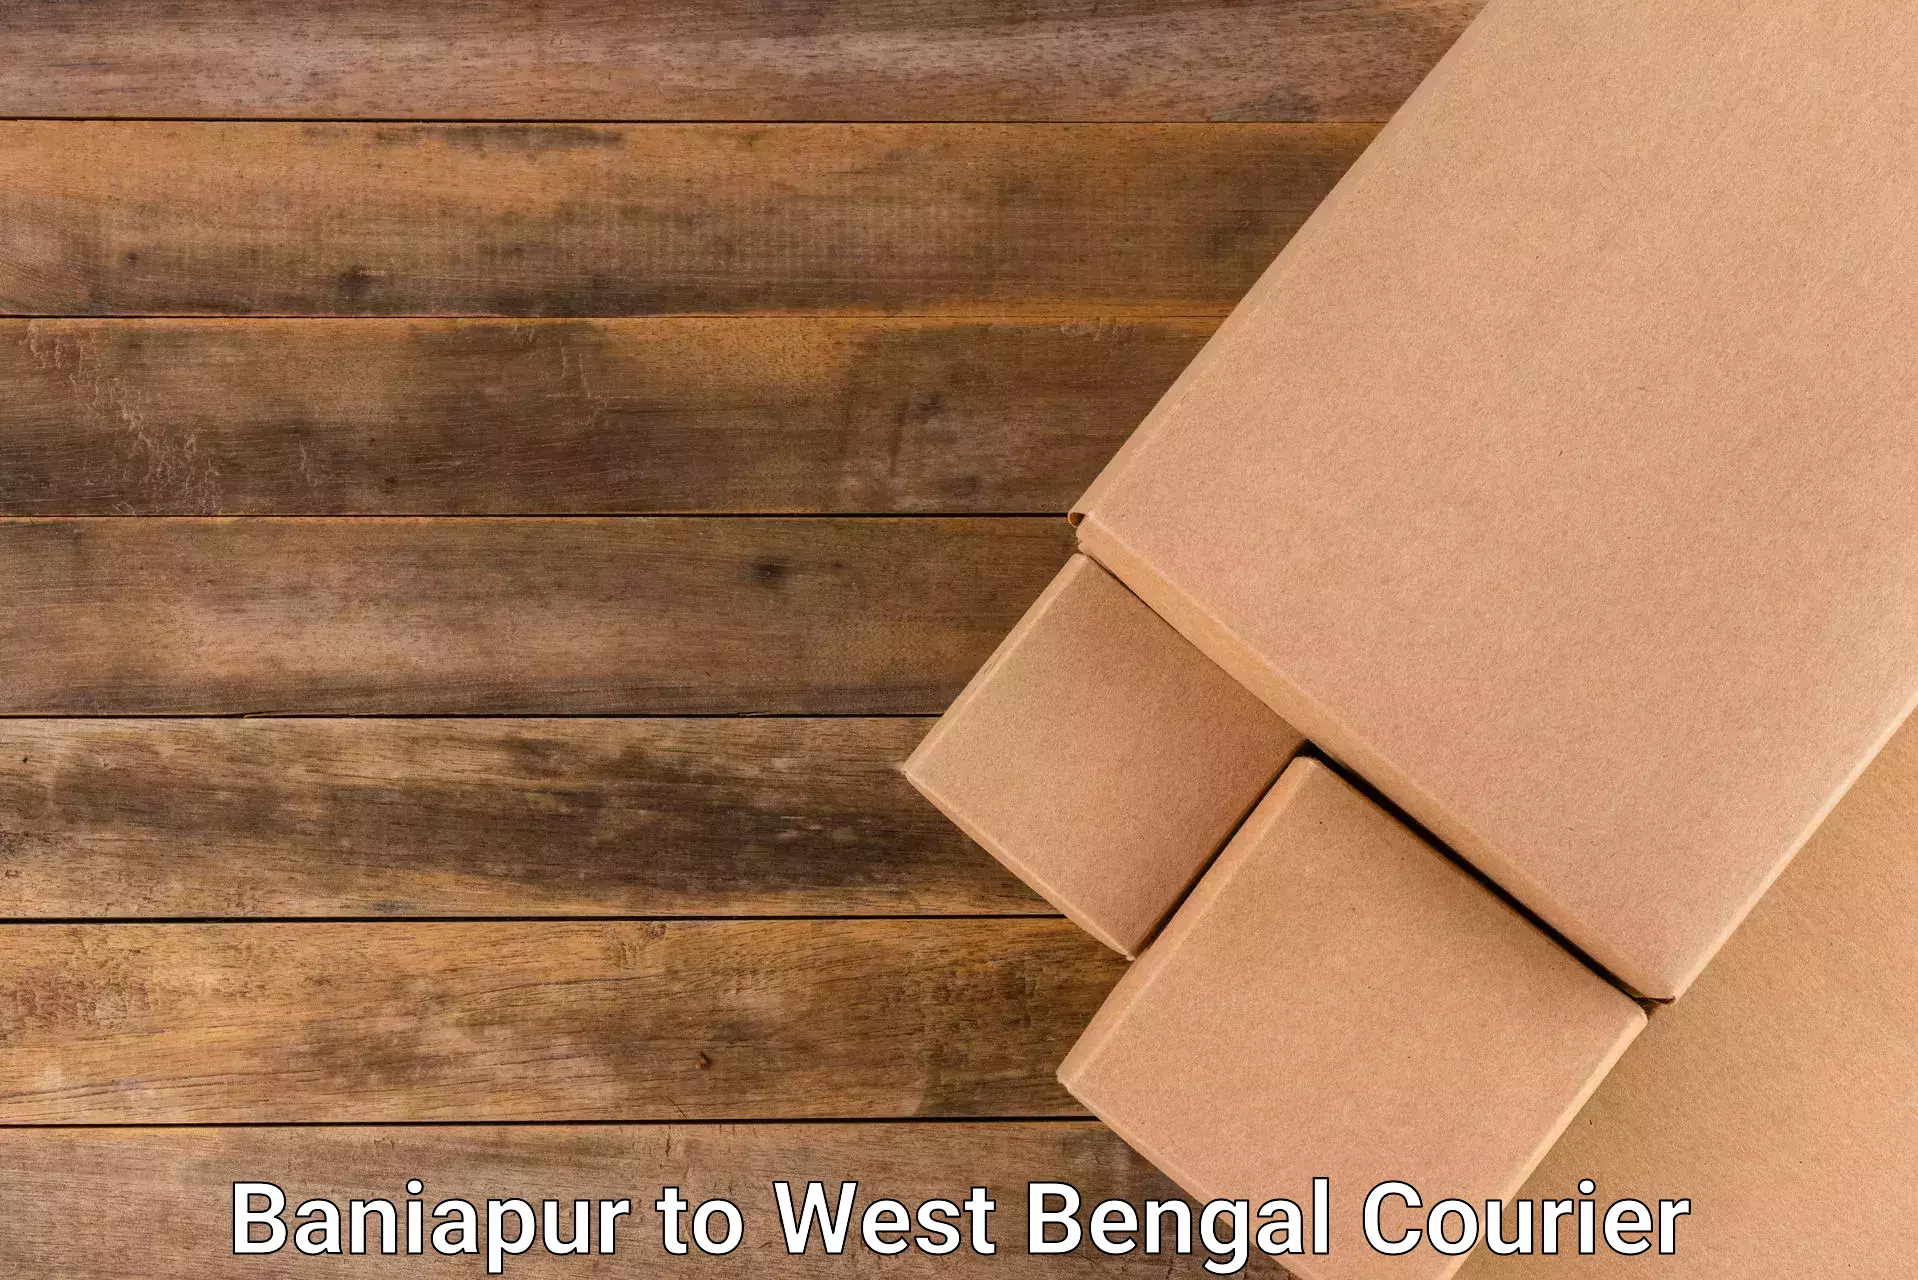 Next day courier Baniapur to Calcutta University Kolkata